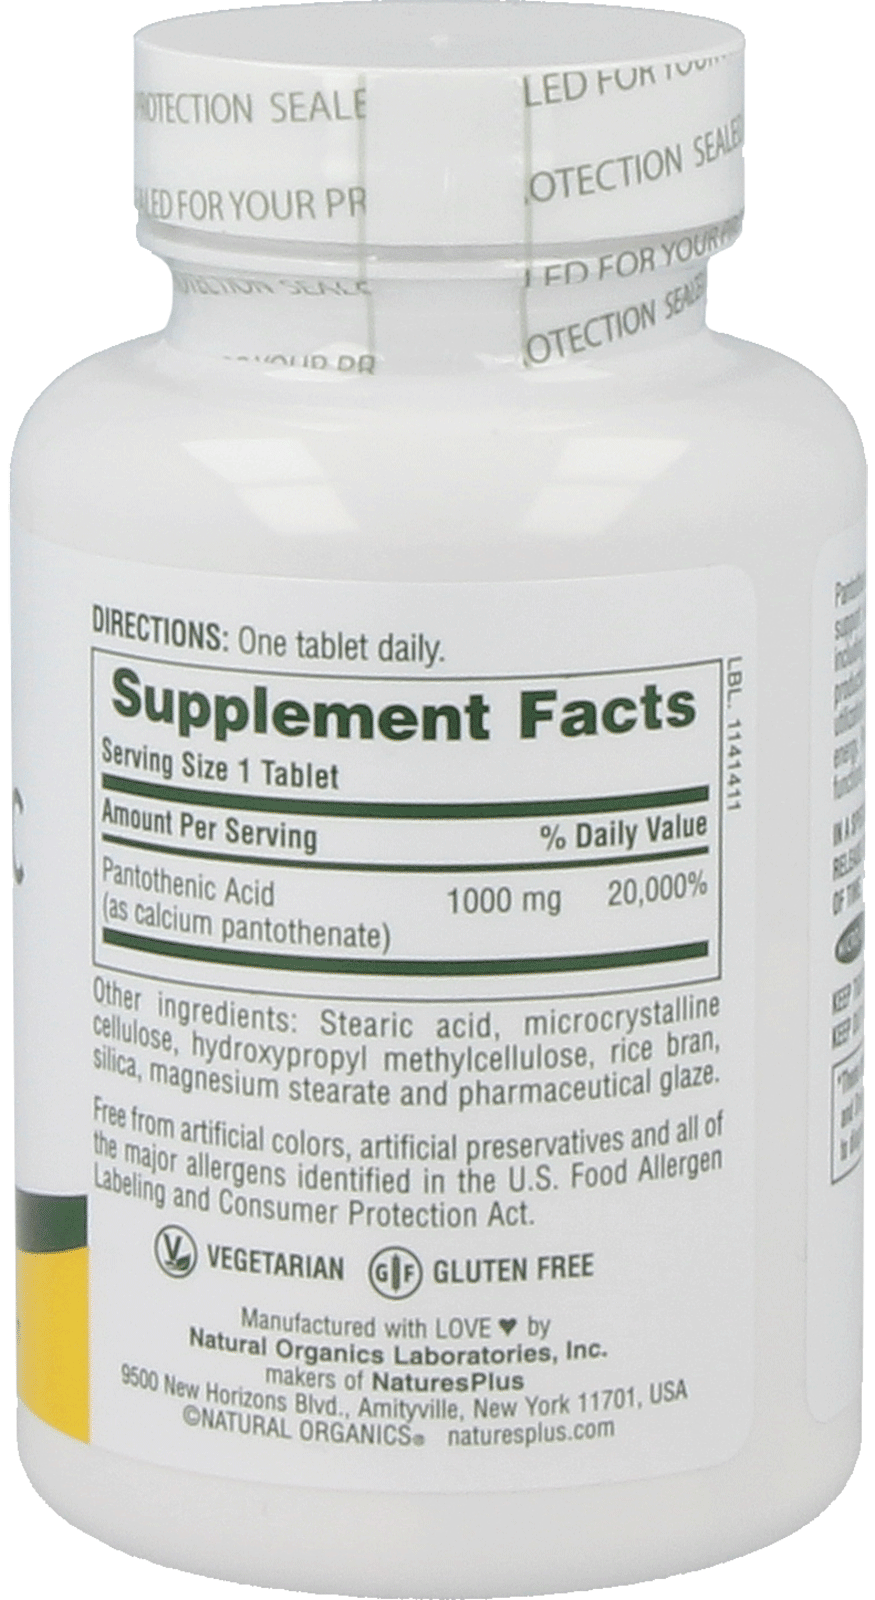 Pantothenic Acid 1000 mg 